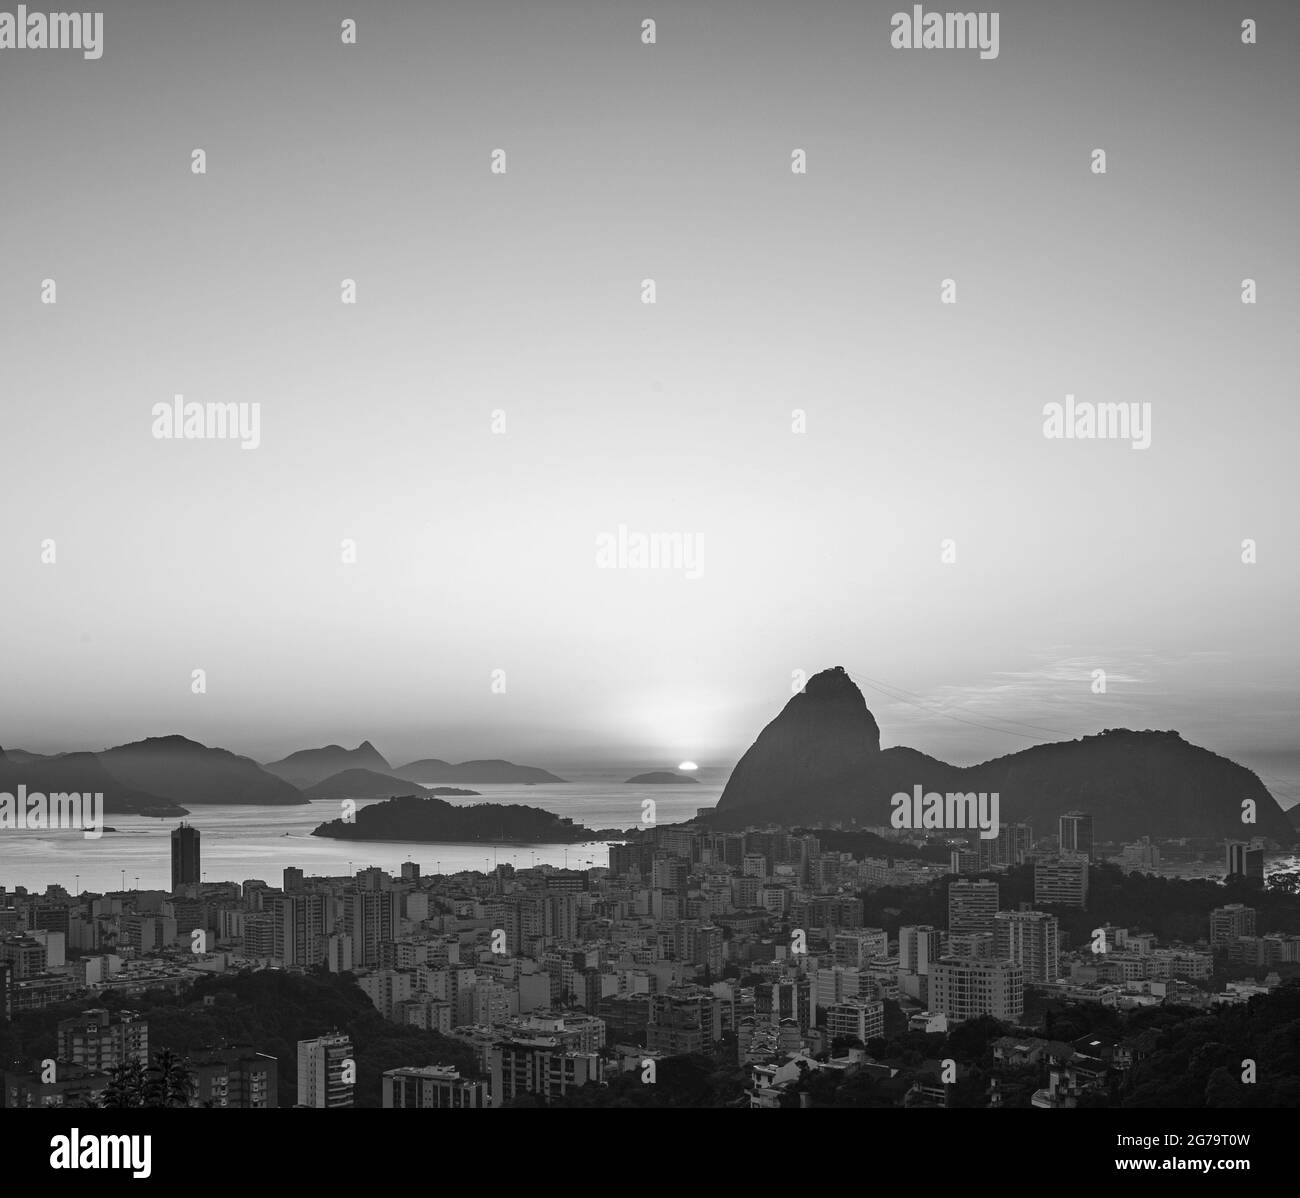 Prise de vue en début de matinée au lever du soleil du mont Sugarloaf et de Botafogo à Rio de Janeiro, au Brésil Banque D'Images